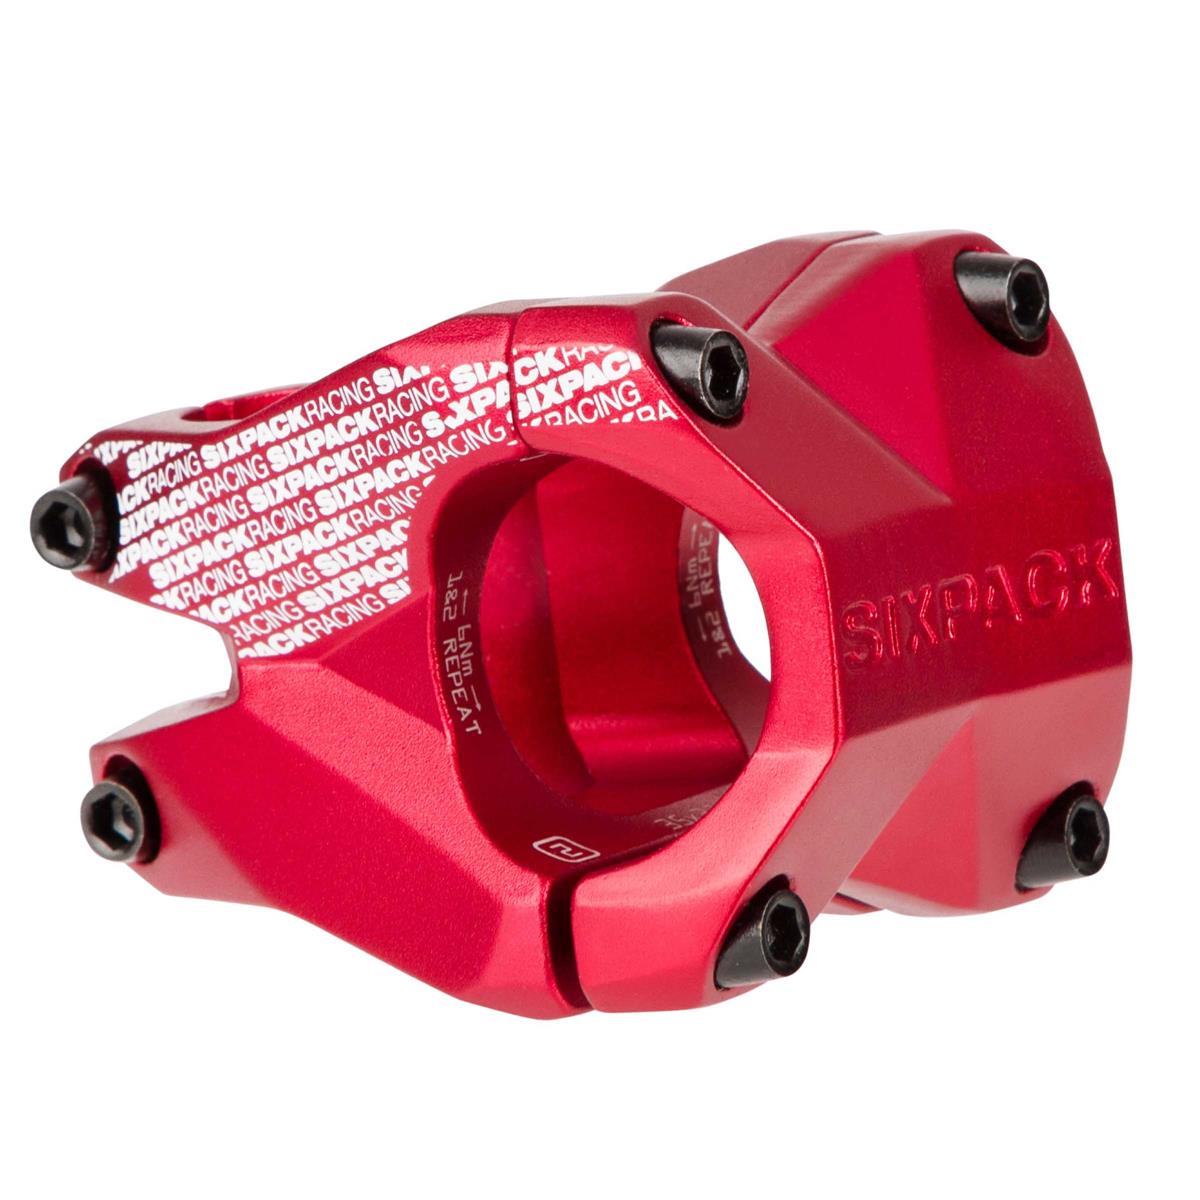 Sixpack Attacco Manubrio MTB Menace Red, 31.8 mm, 35 mm Reach